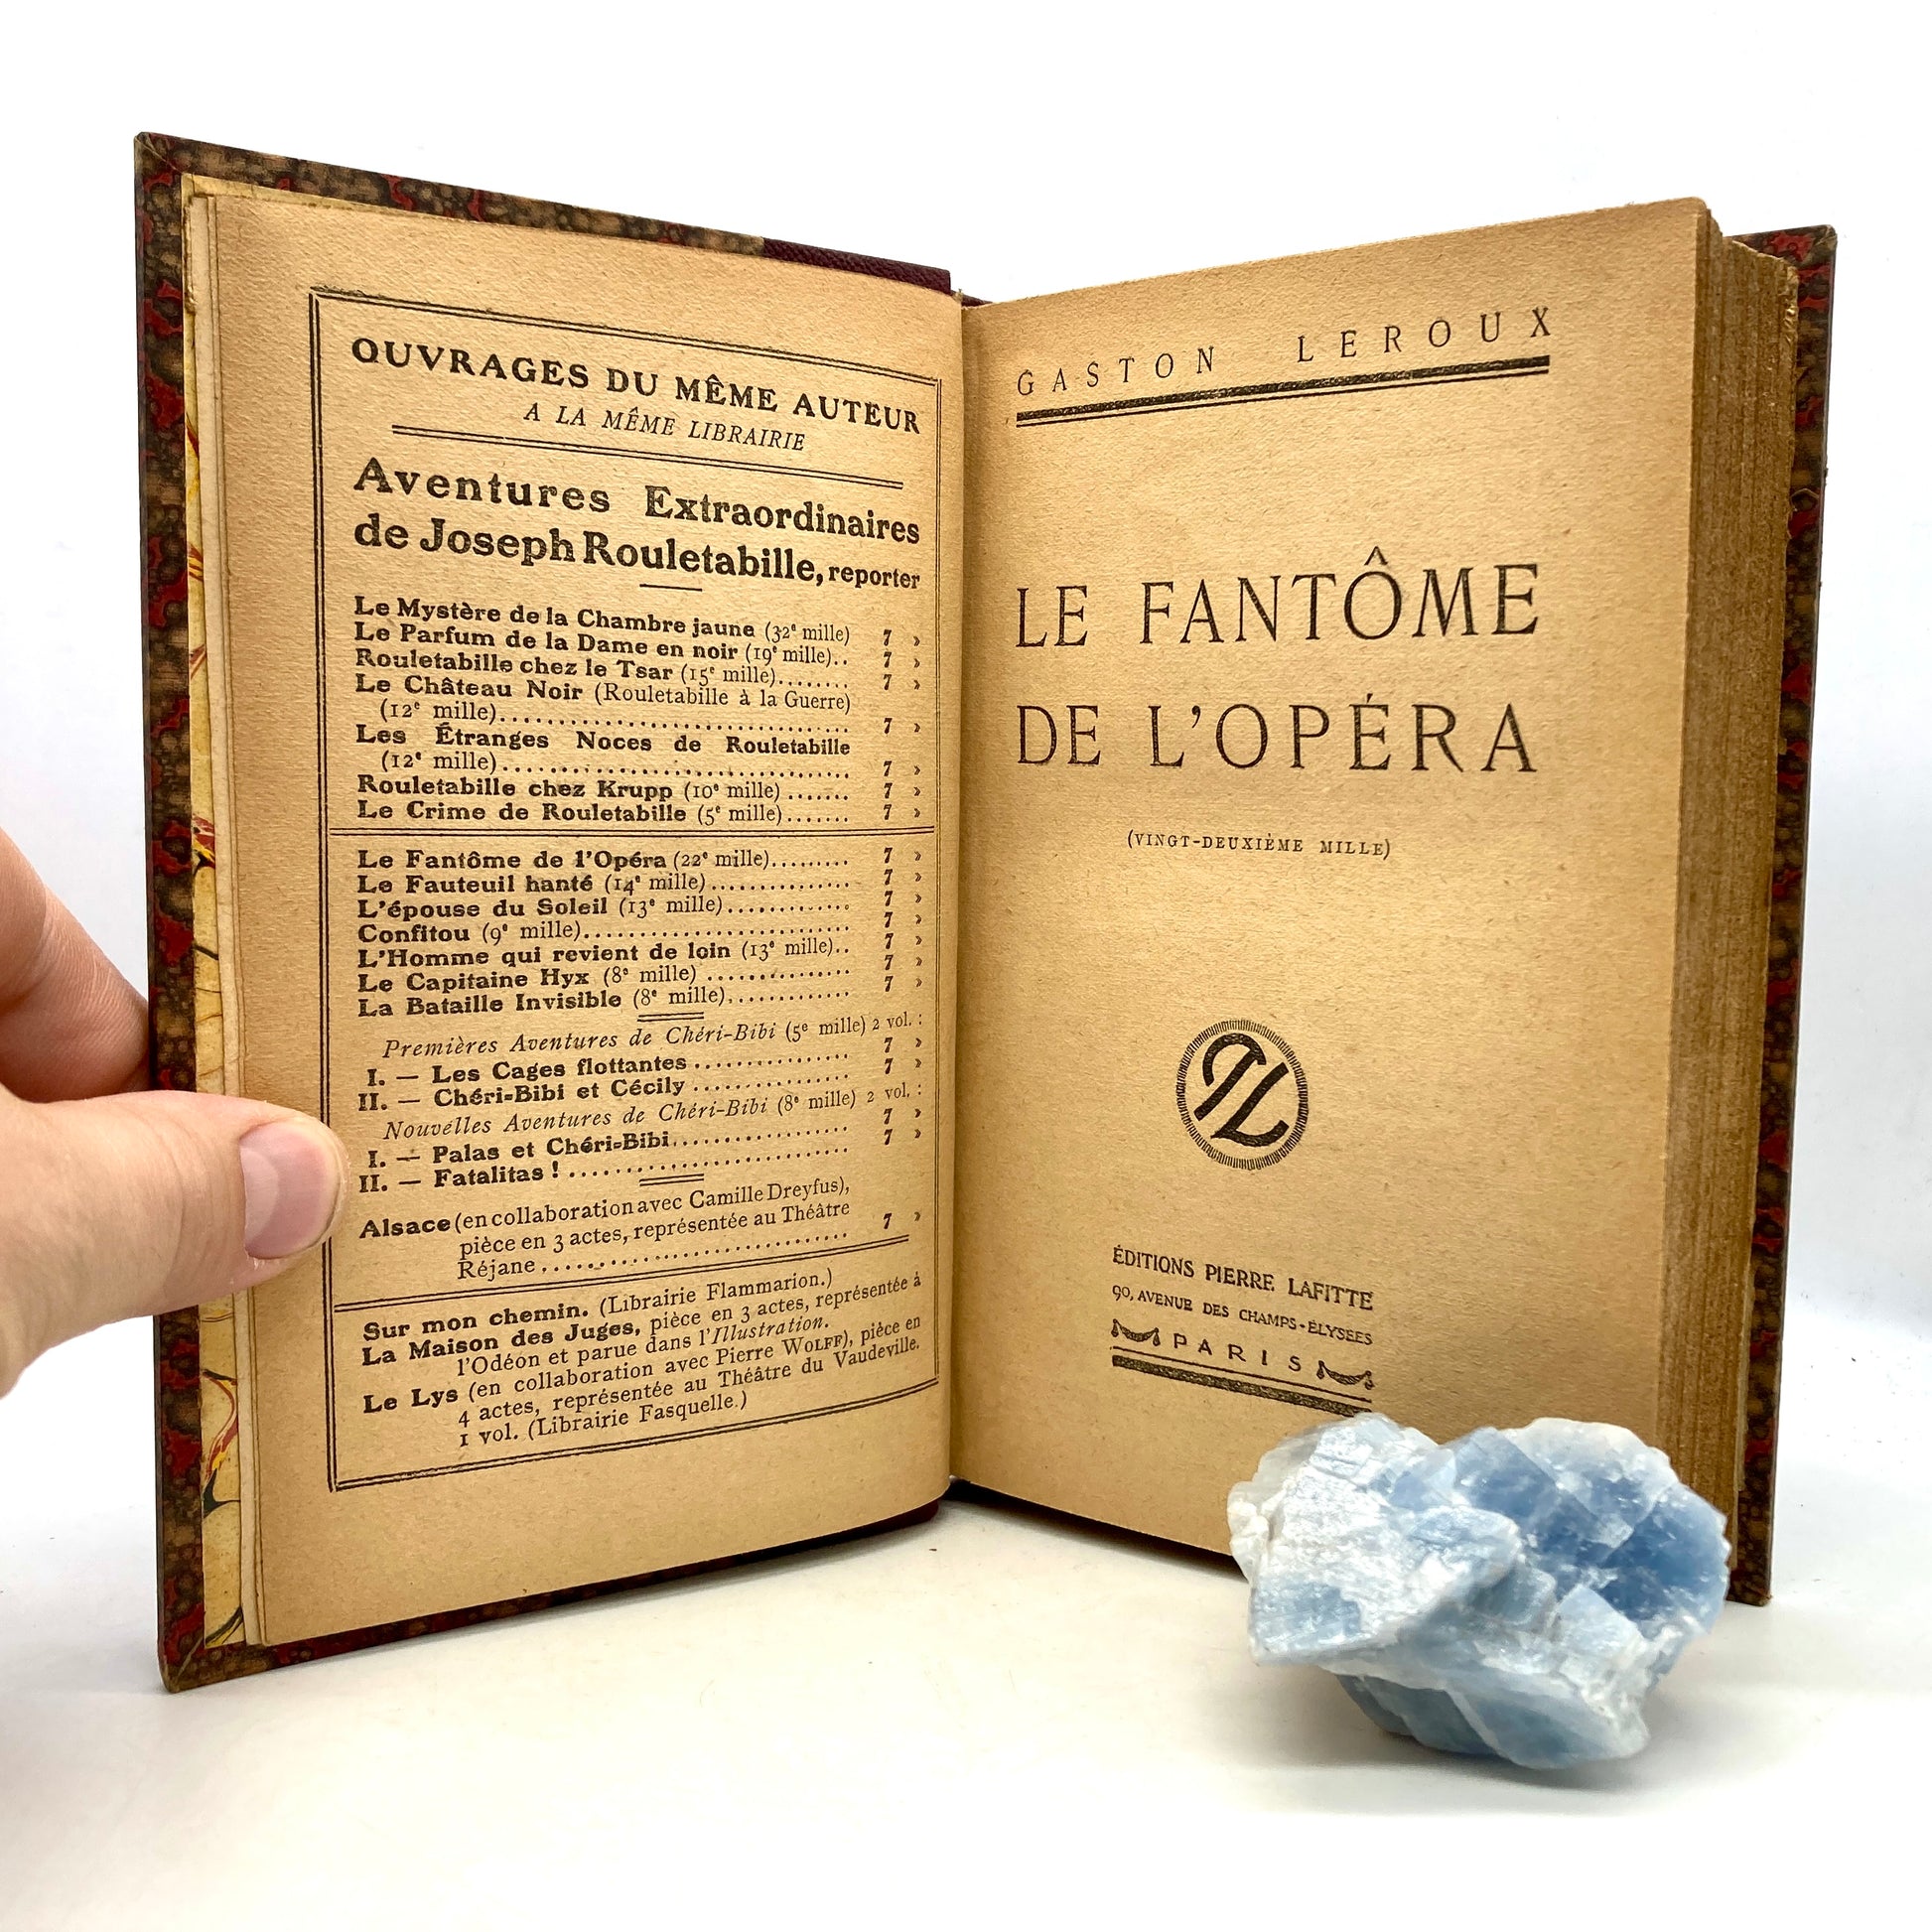 LEROUX, Gaston "Le Fantôme de l'Opéra" [Editions Pierre Lafitte, 1922] - Buzz Bookstore